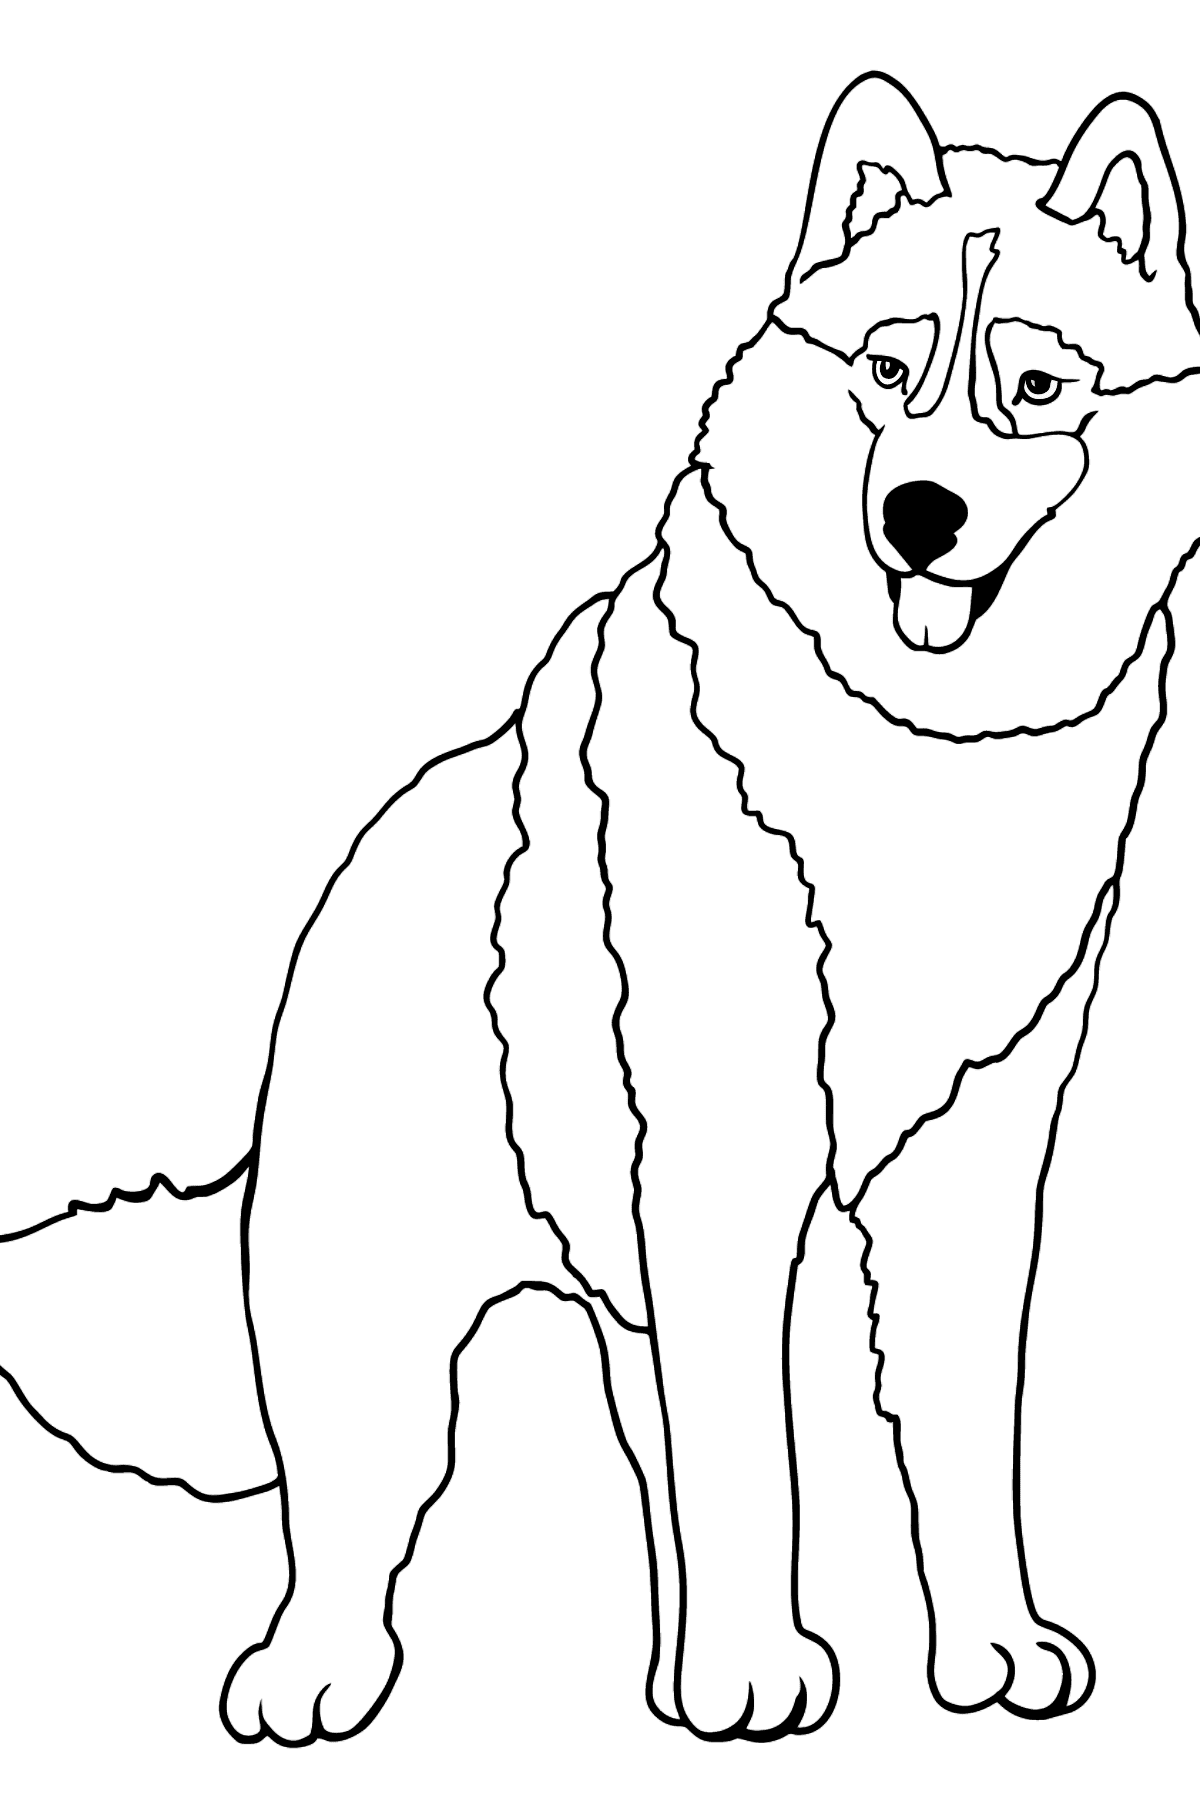 Desenho de Husky para colorir - Imagens para Colorir para Crianças